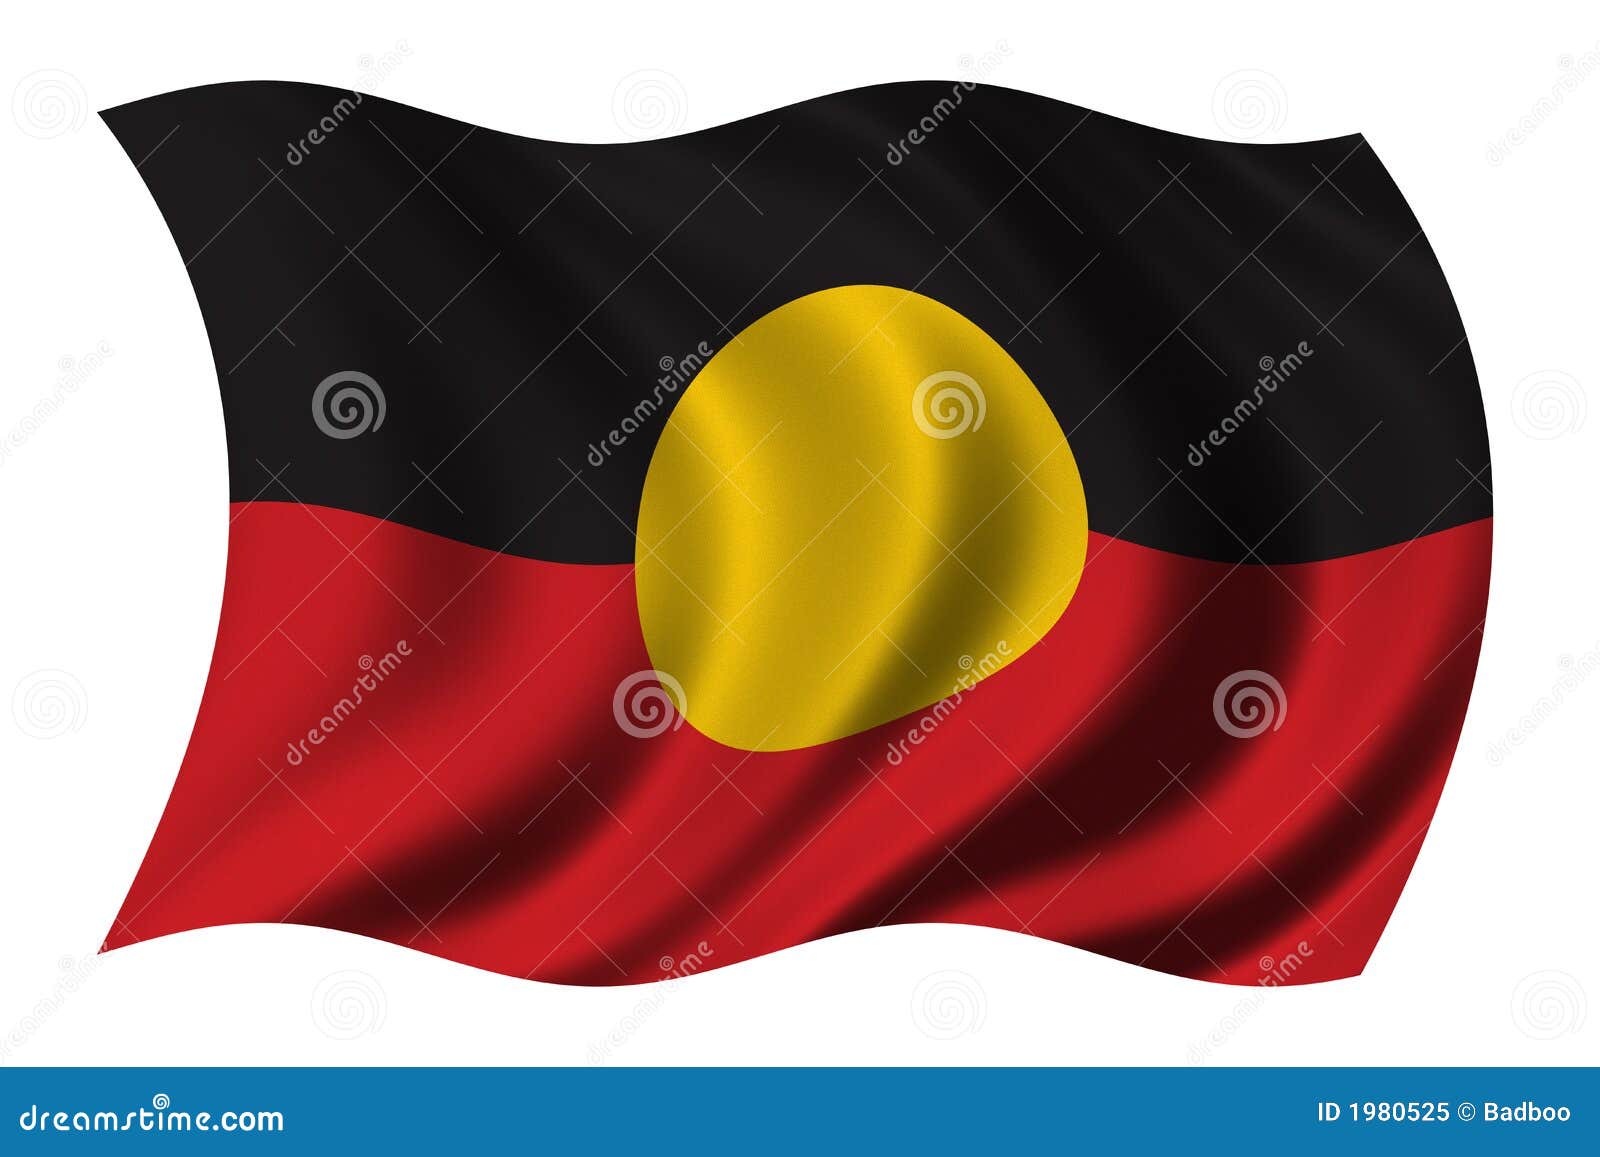 clip art aboriginal flag - photo #26